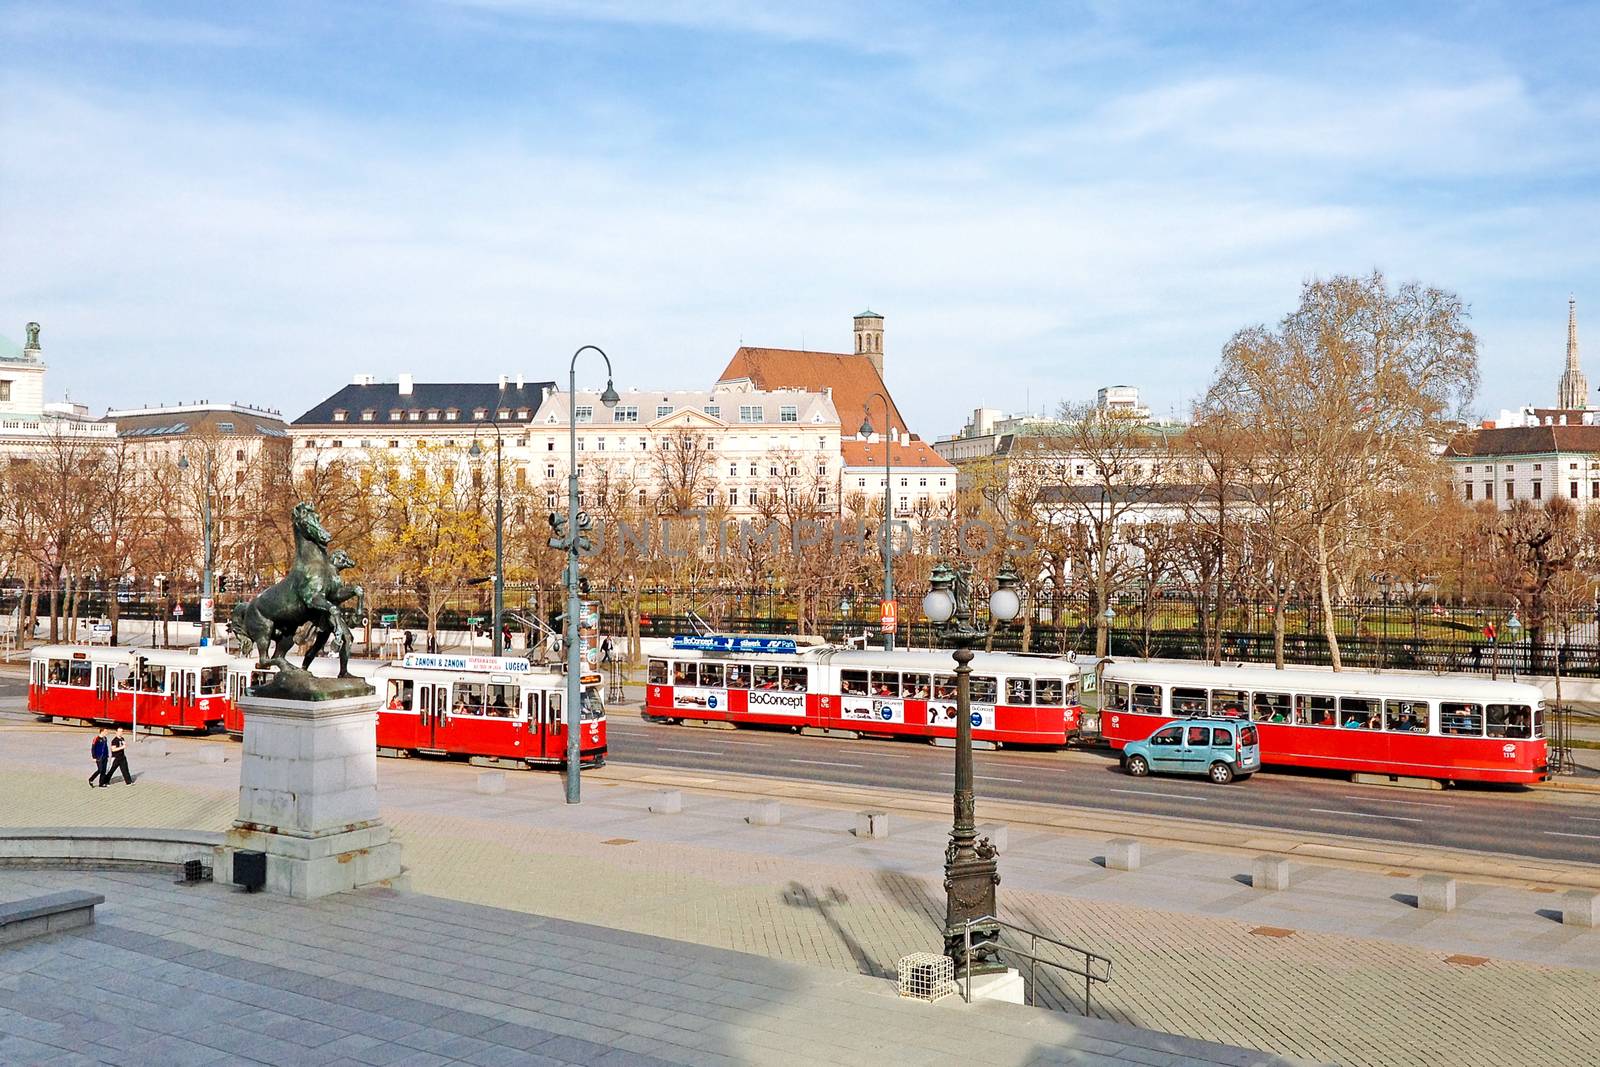 Vienna, Austria - 21 March, 2014 : Old red tram on the street in Vienna, Austria